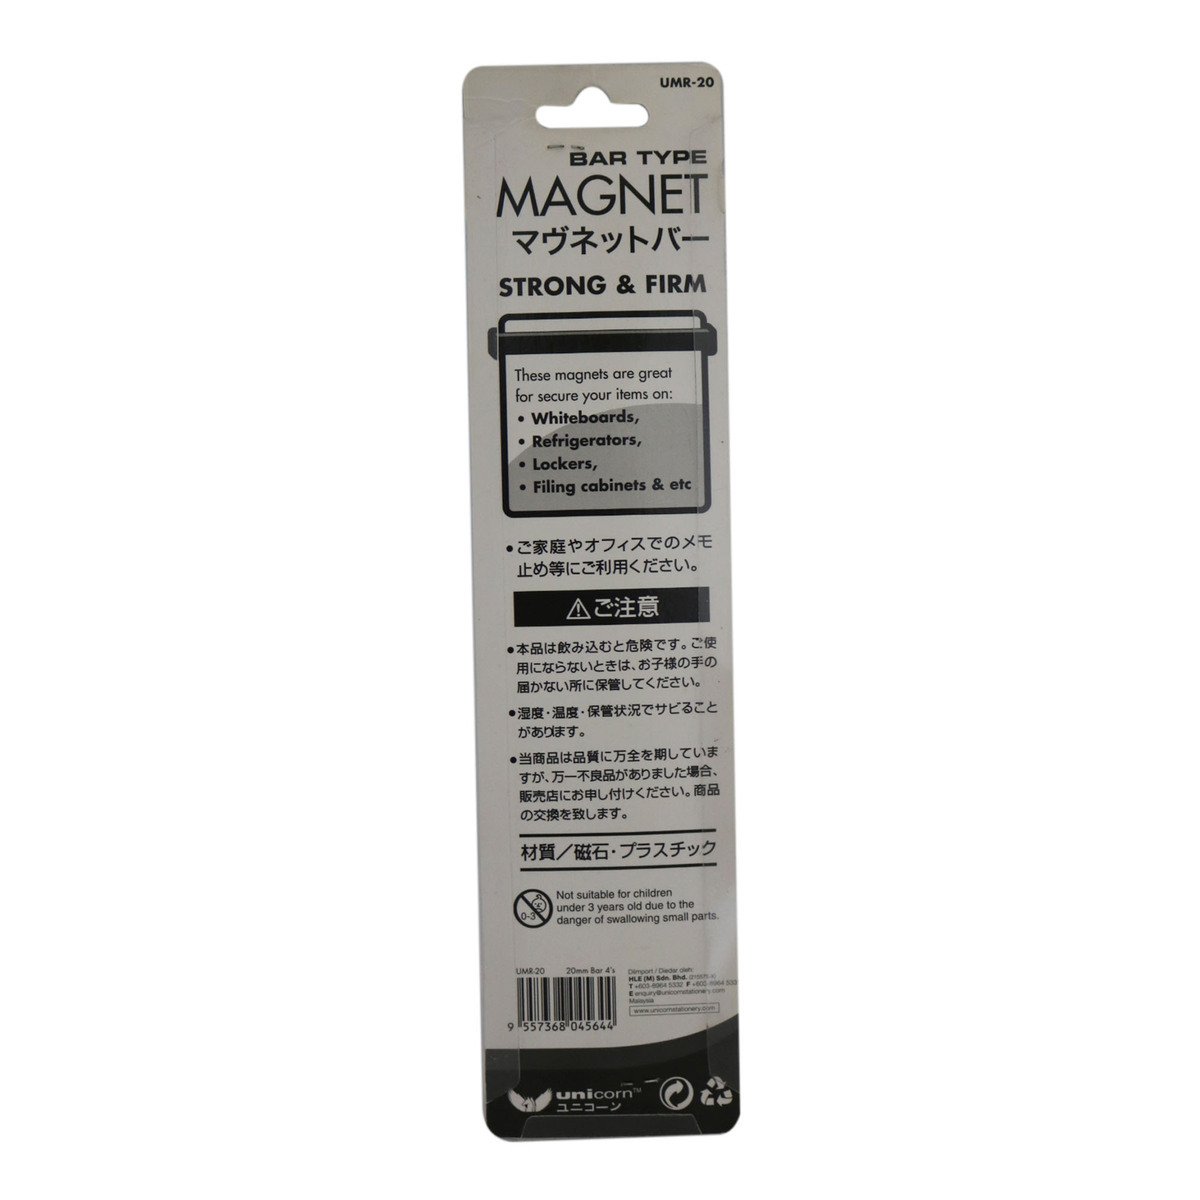 Unicorn Magnetic Bar Umb-200 4'S